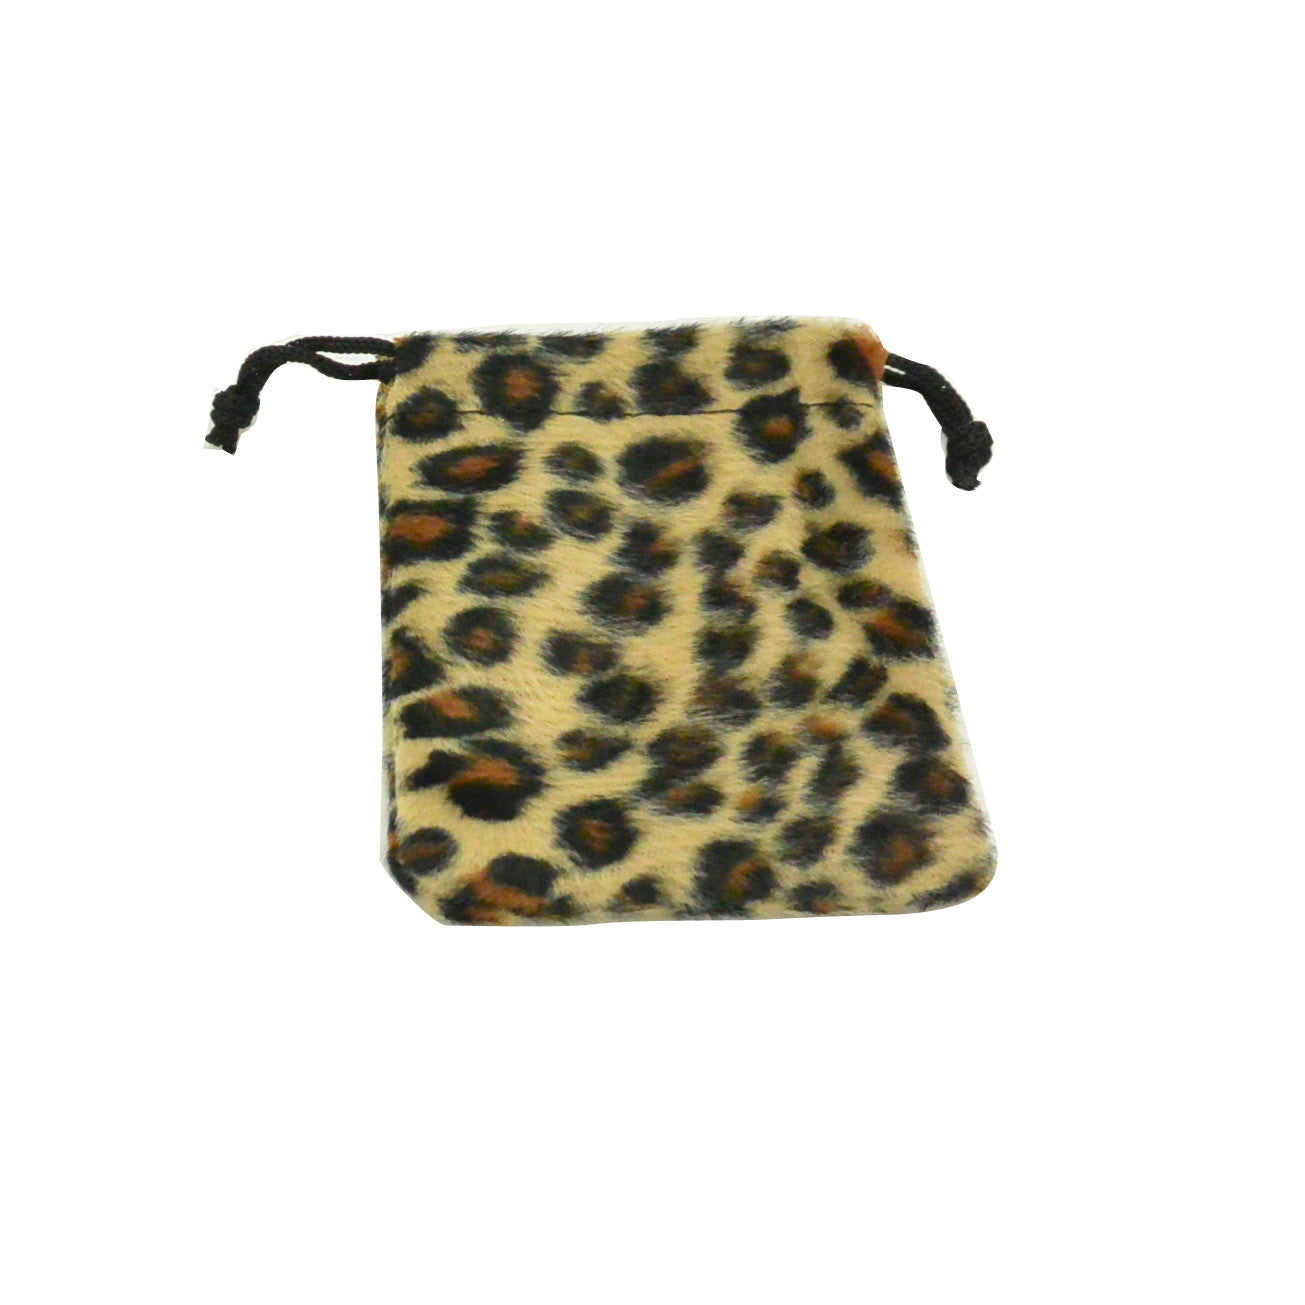 Small Jaguar High Quality Velvet Pouch Bags Party Favors